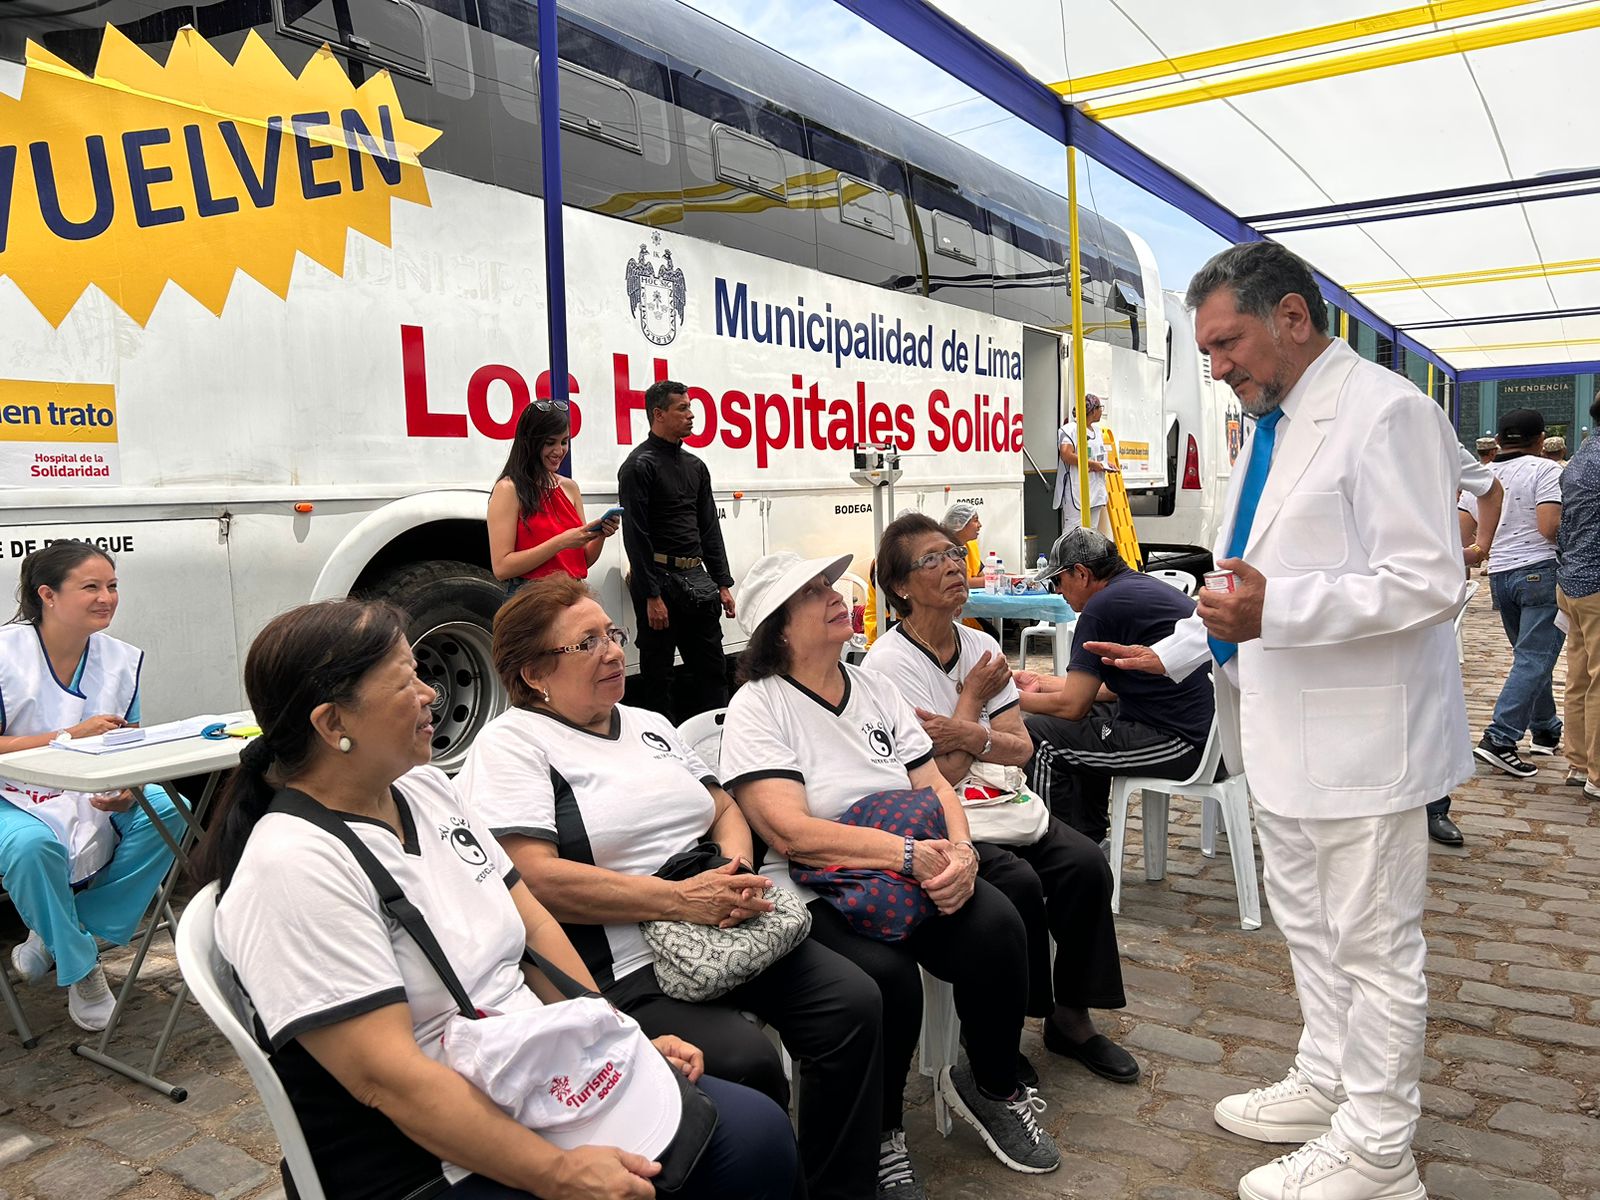 VECINOS DE PUEBLO LIBRE RECIBIERON  ATENCIONES  MÉDICAS GRATIS DEL HOSPITAL DE LA SOLIDARIDAD